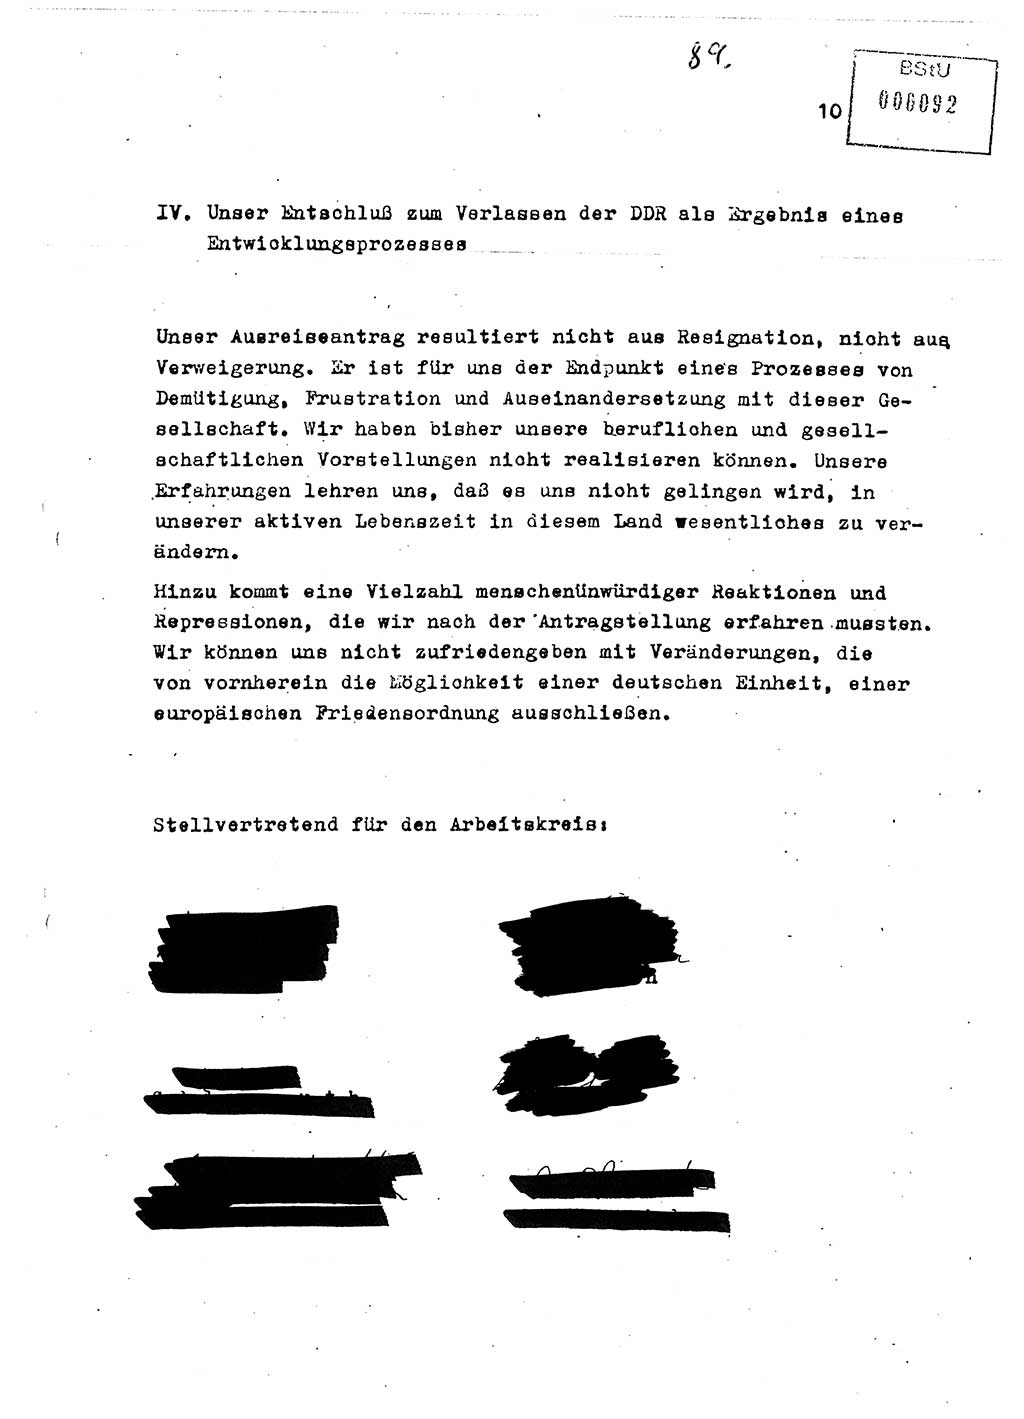 Diplomarbeit Major Günter Müller (HA Ⅸ/9), Ministerium für Staatssicherheit (MfS) [Deutsche Demokratische Republik (DDR)], Juristische Hochschule (JHS), Vertrauliche Verschlußsache (VVS) o001-402/89, Potsdam 1989, Seite 89 (Dipl.-Arb. MfS DDR JHS VVS o001-402/89 1989, S. 89)